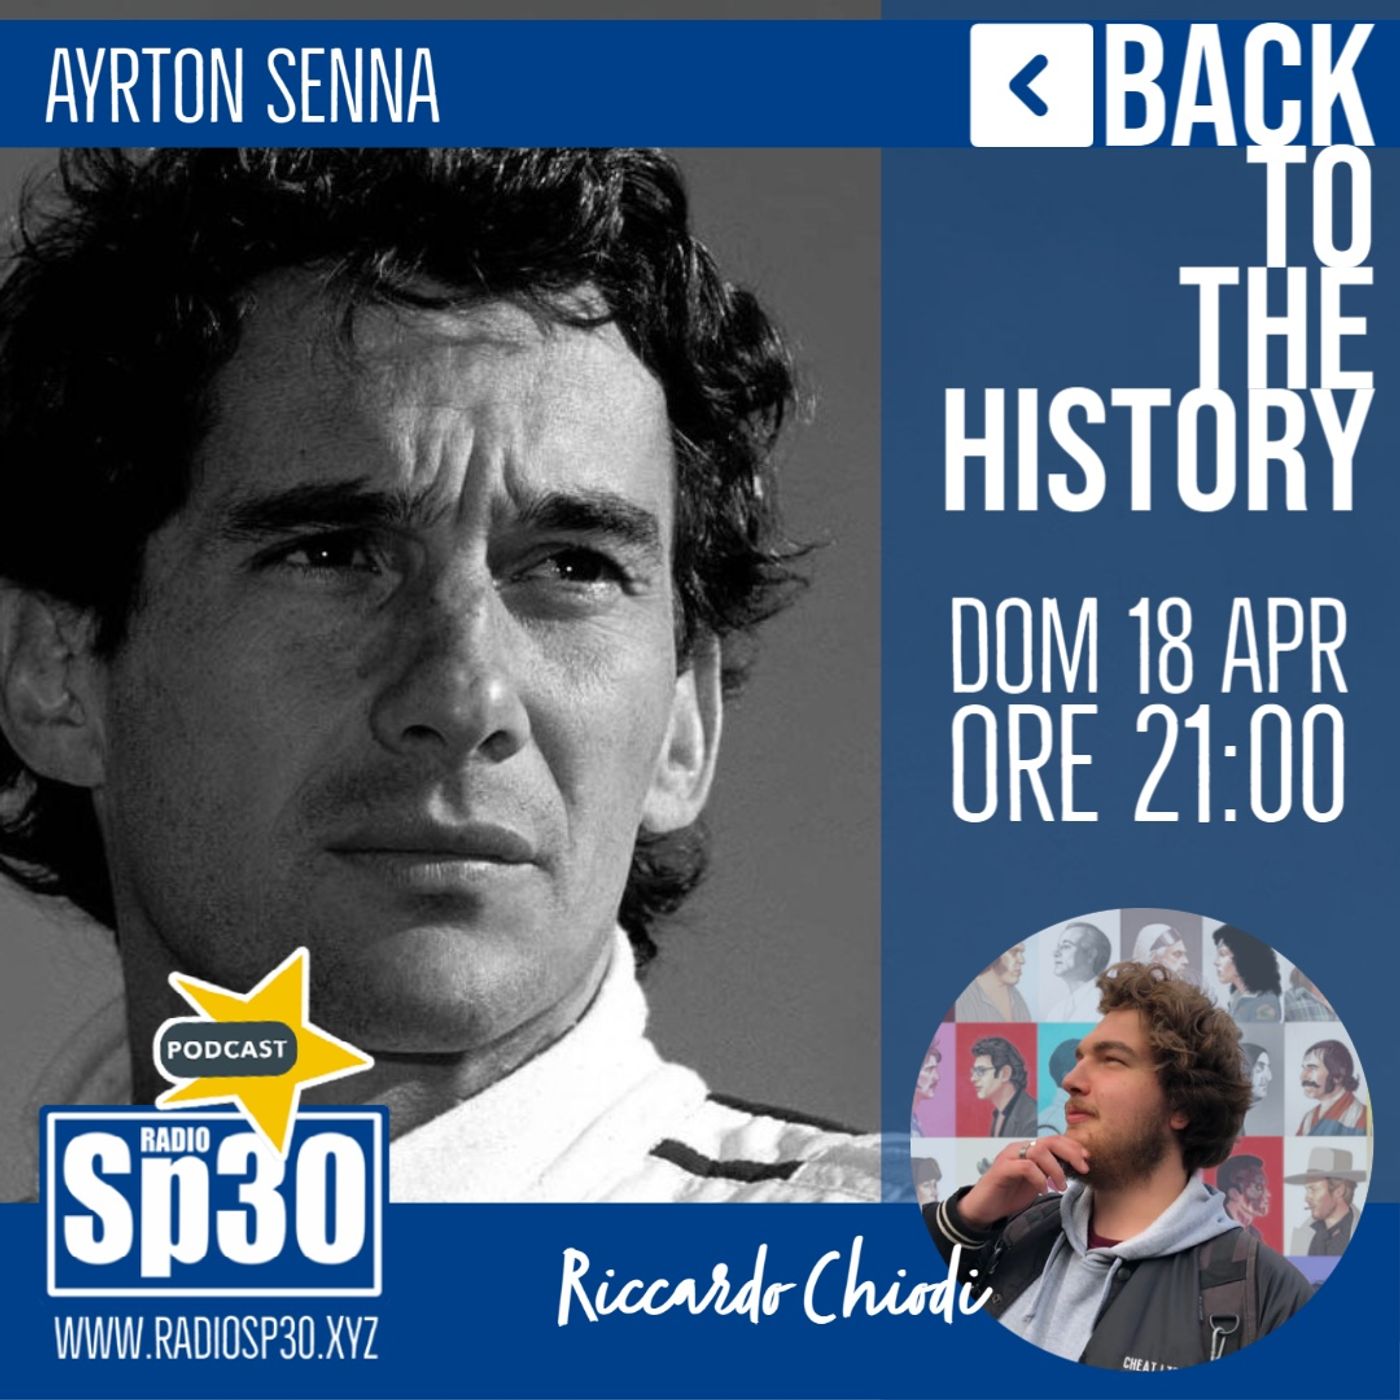 #backtothehistory - st.1 ep.3 - Ayrton Senna